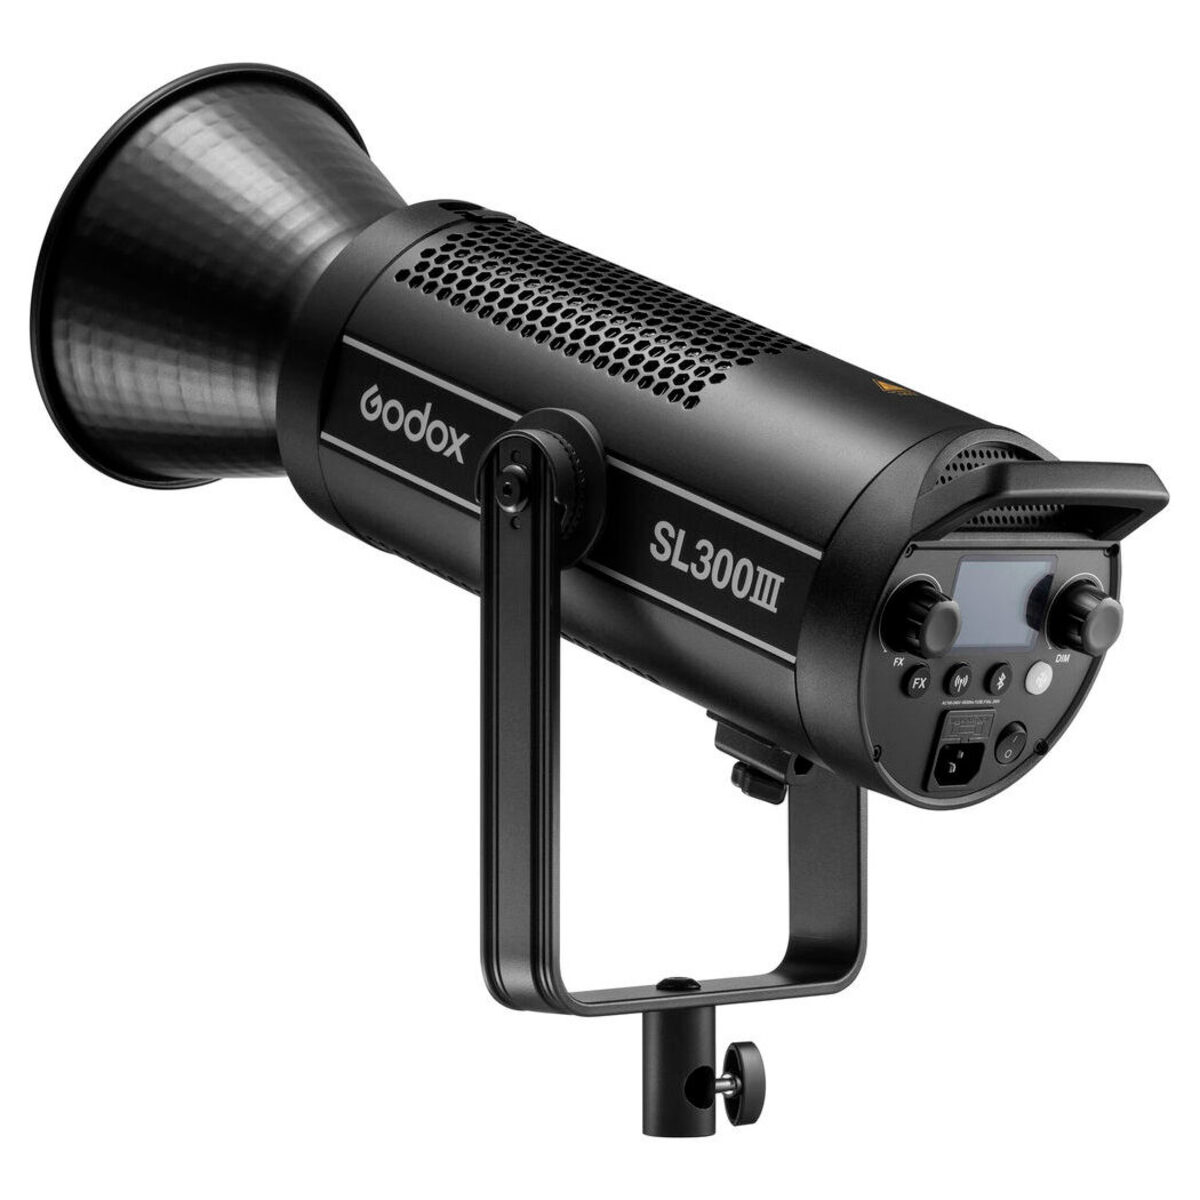 Godox SL300III LED Video Light